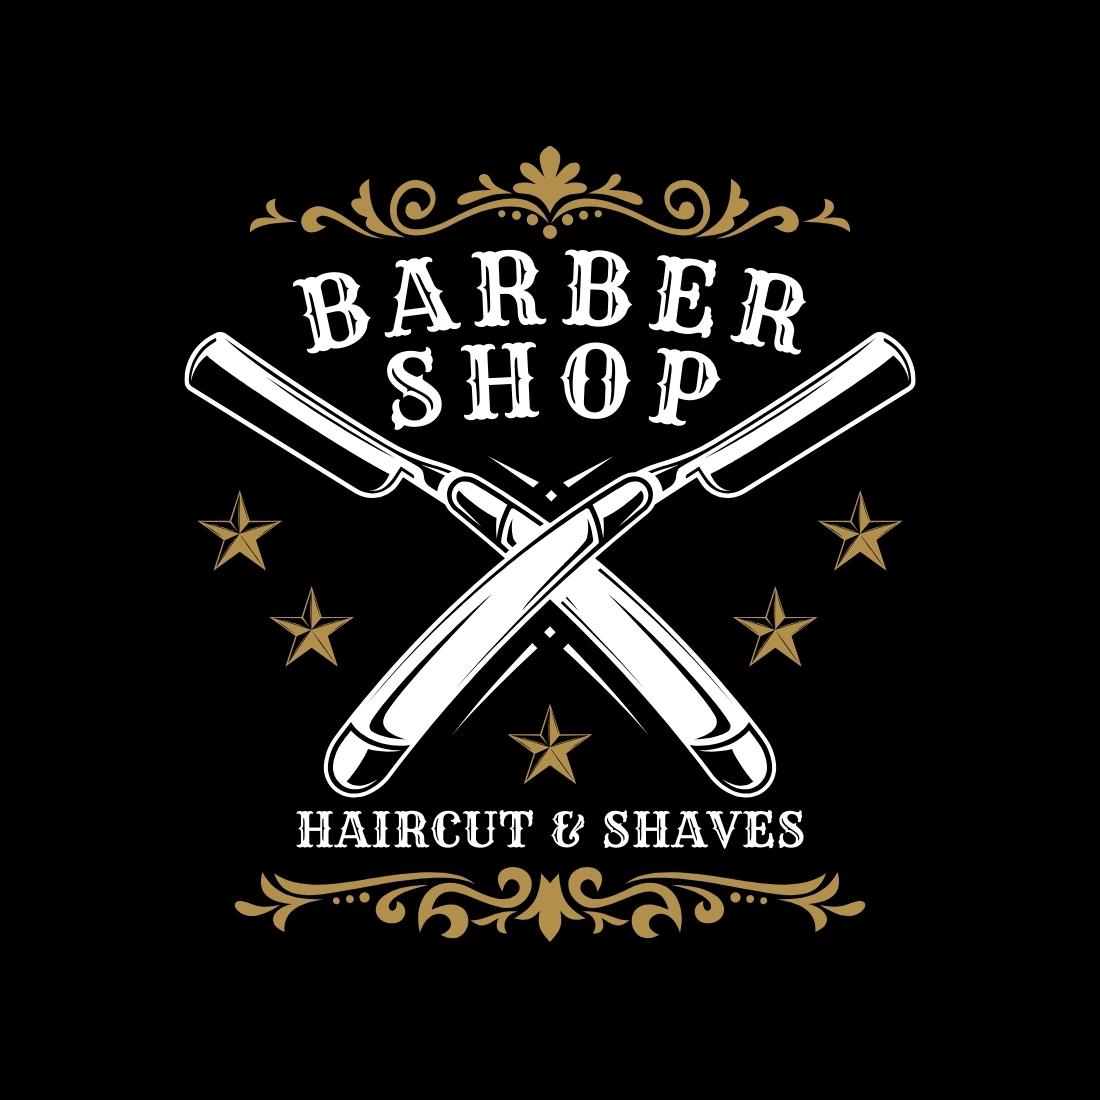 Black Brown Vintage Barber Shop Logo Template cover image.